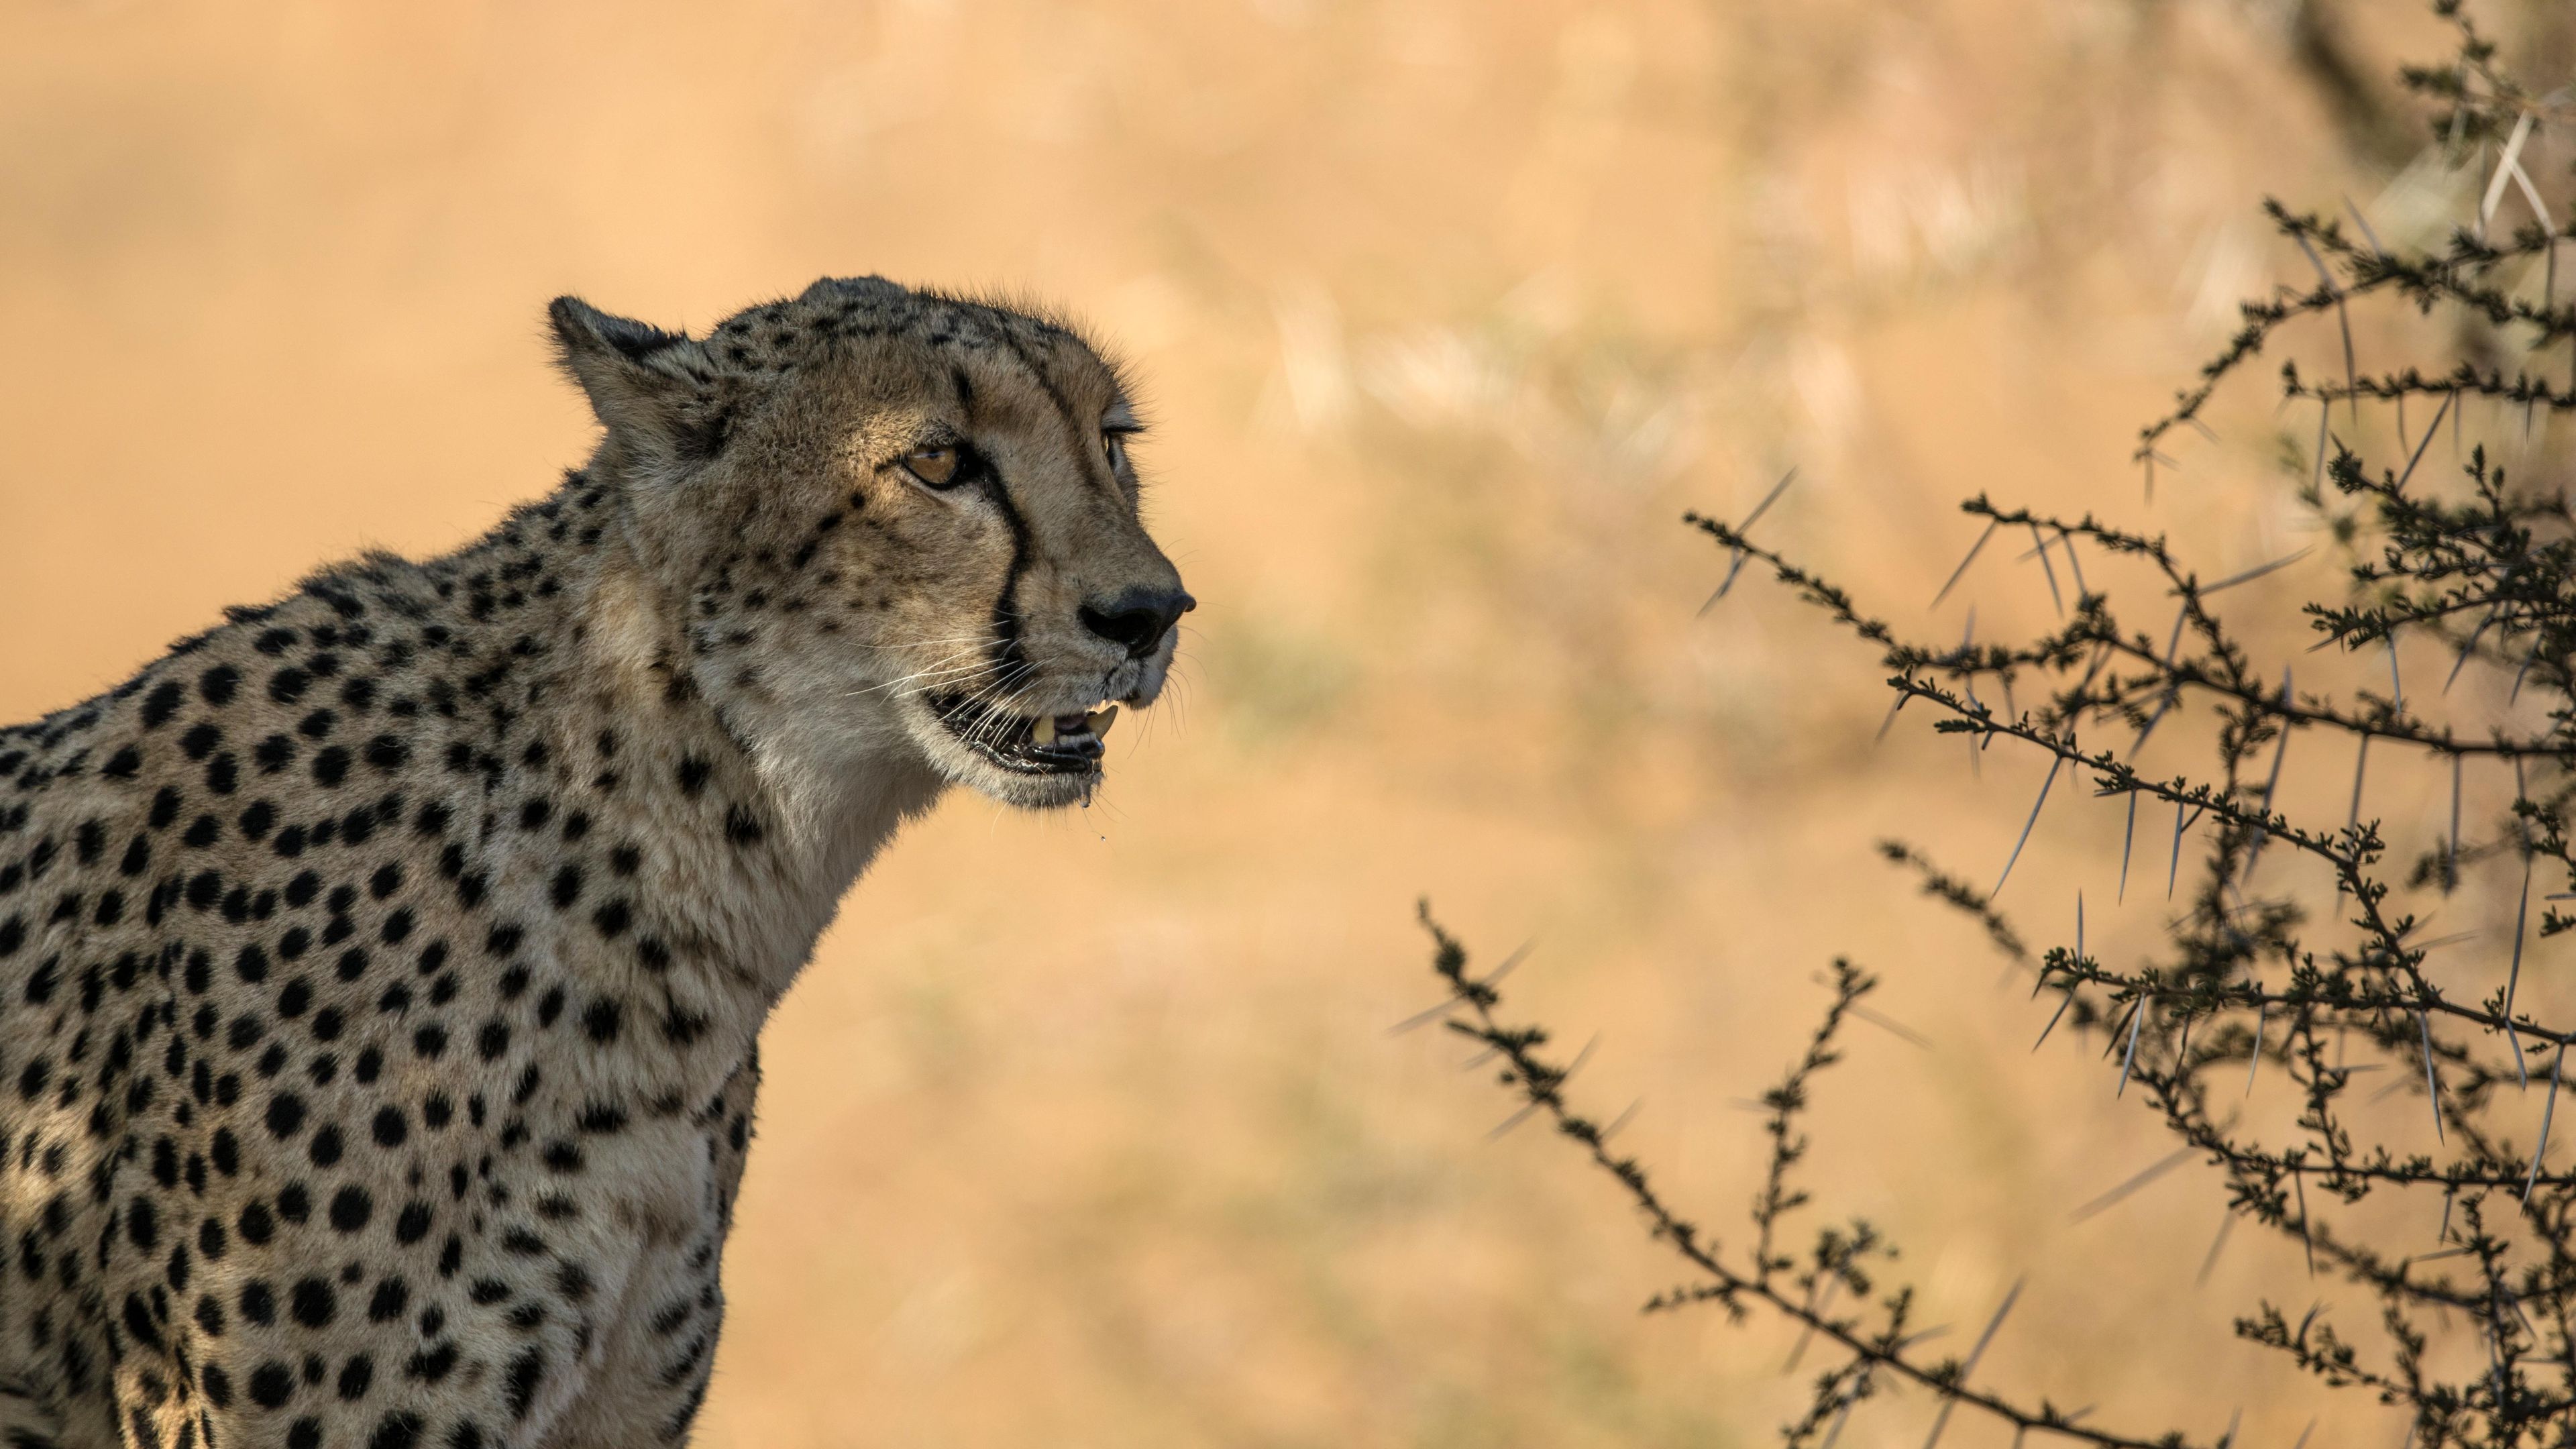 natur-und-rangerkurs-kenia-field-guide-level1-gepard-natucate